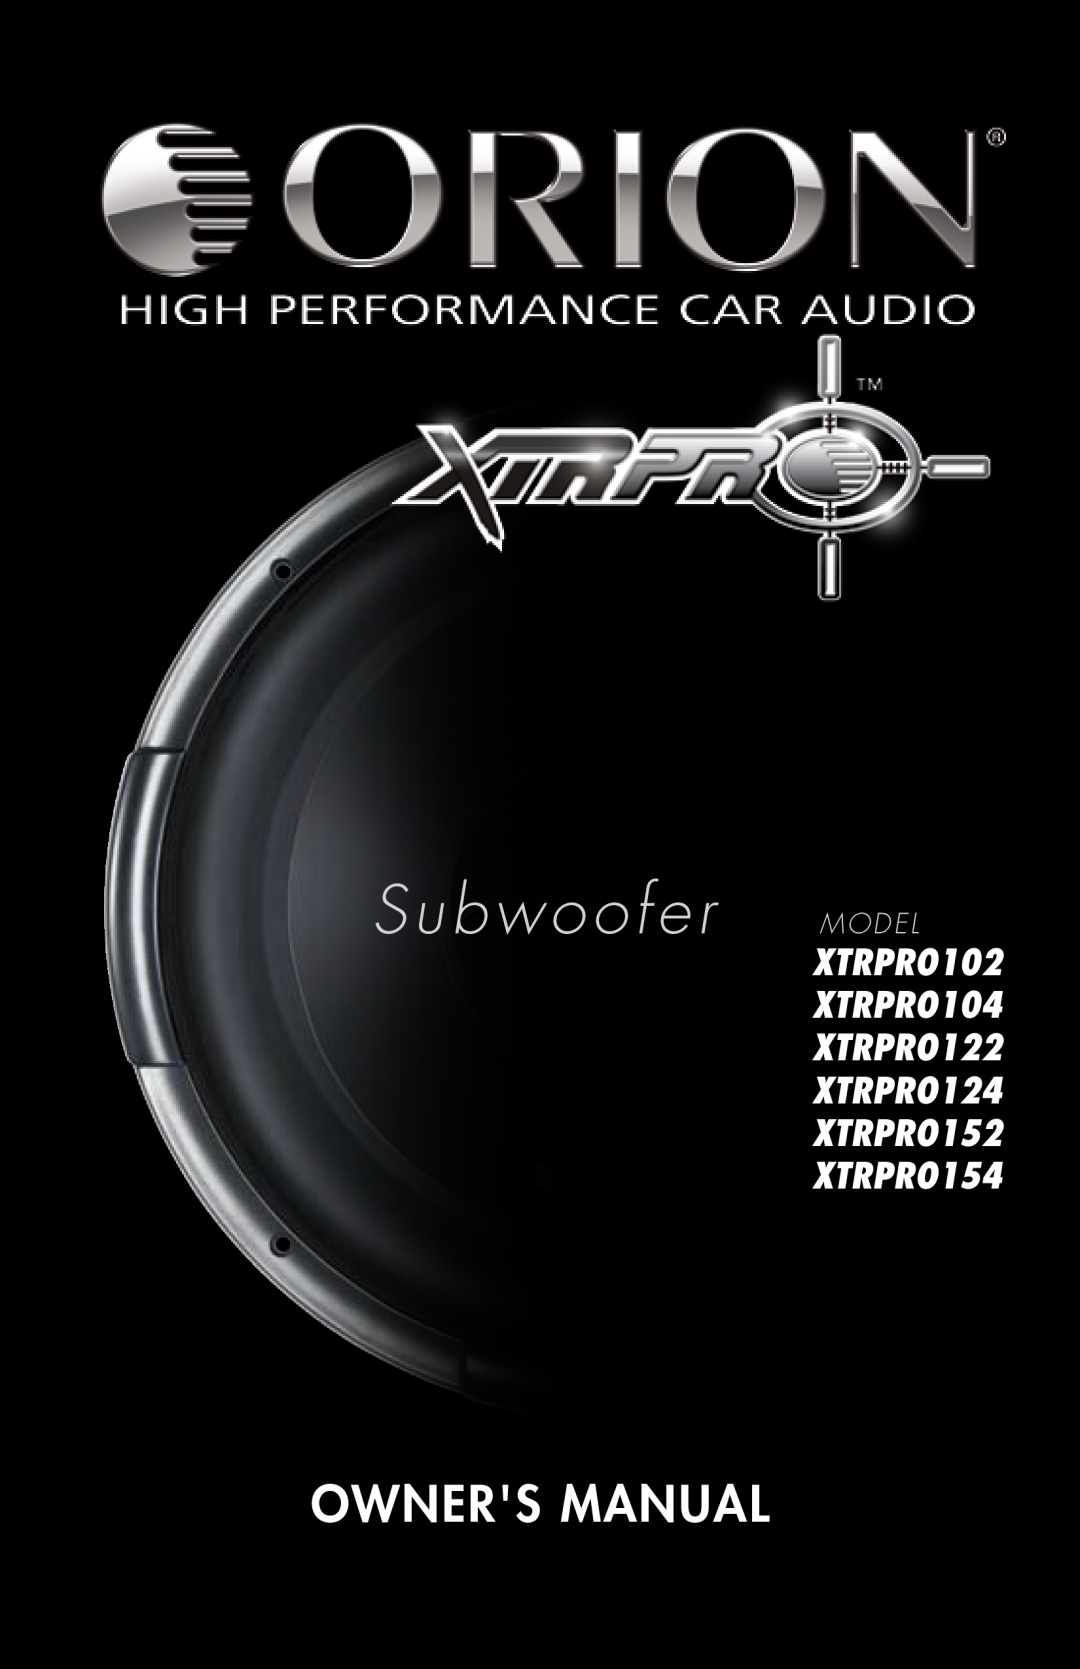 Orion Car Audio owner manual Subwoofer MODEL, Owners Manual, XTRPRO102 XTRPRO104 XTRPRO122 XTRPRO124 XTRPRO152 